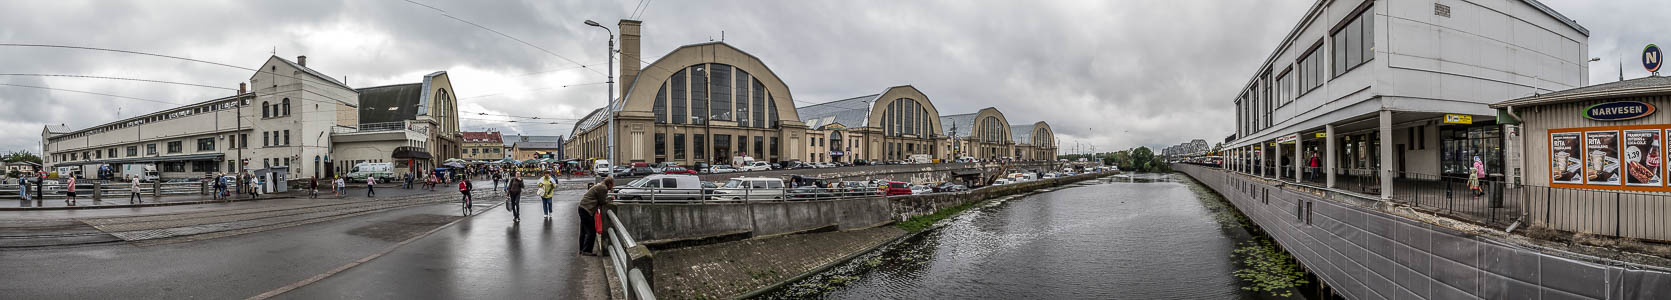 Riga Moskauer Vorstadt (Maskavas forstate) Busbahnhof Eisenbahnbrücke Luftschiffhallen Rigaer Zentralmarkt